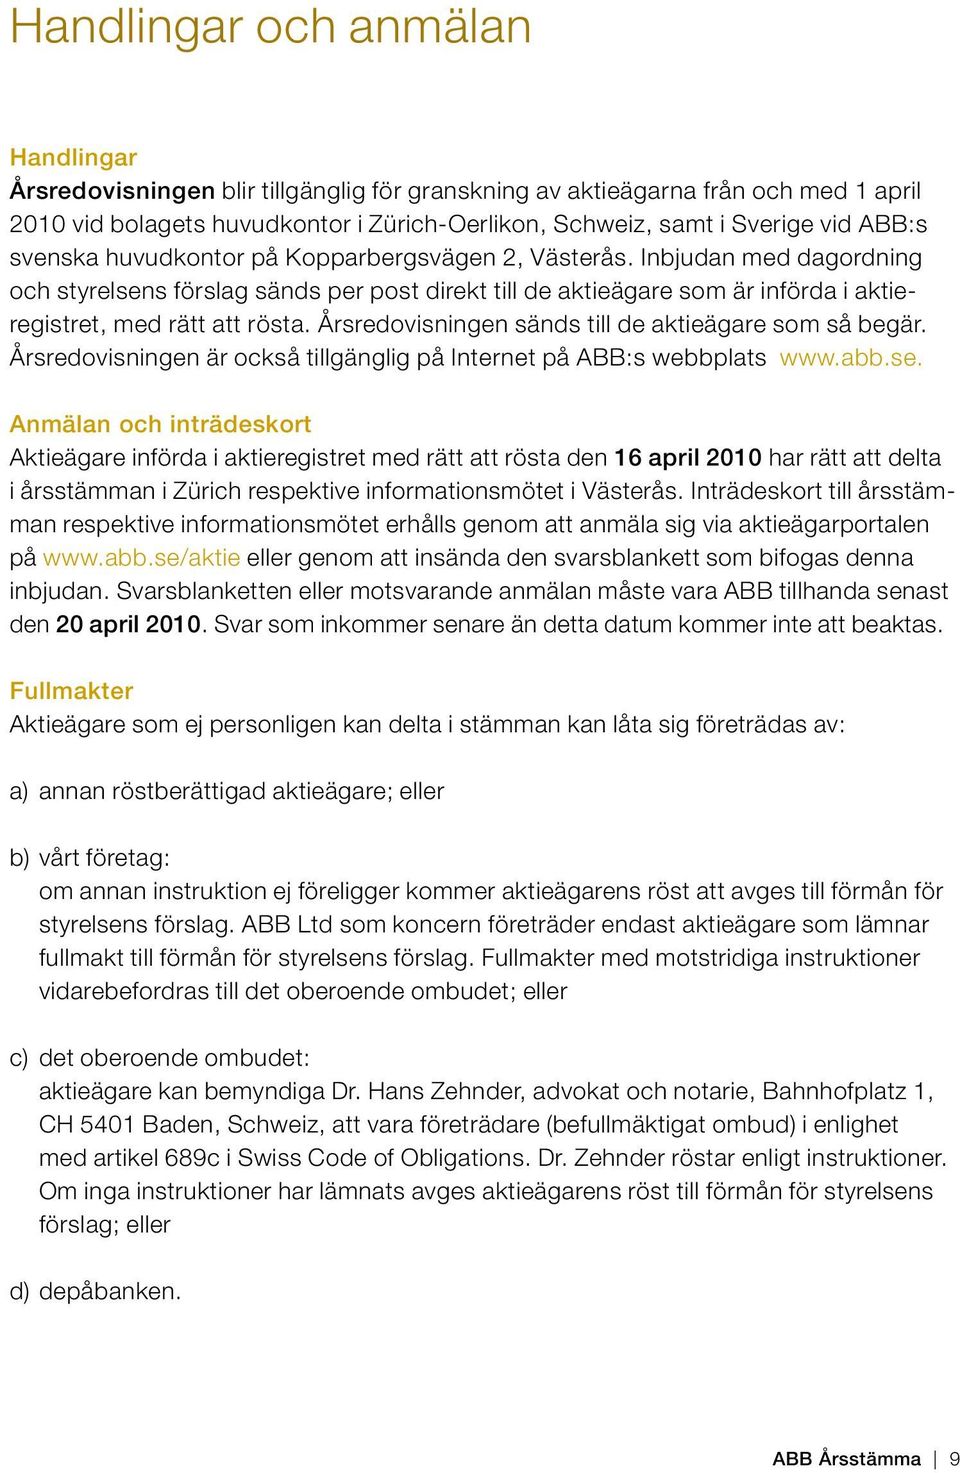 Årsredovisningen sänds till de aktieägare som så begär. Årsredovisningen är också tillgänglig på Internet på ABB:s webbplats www.abb.se.